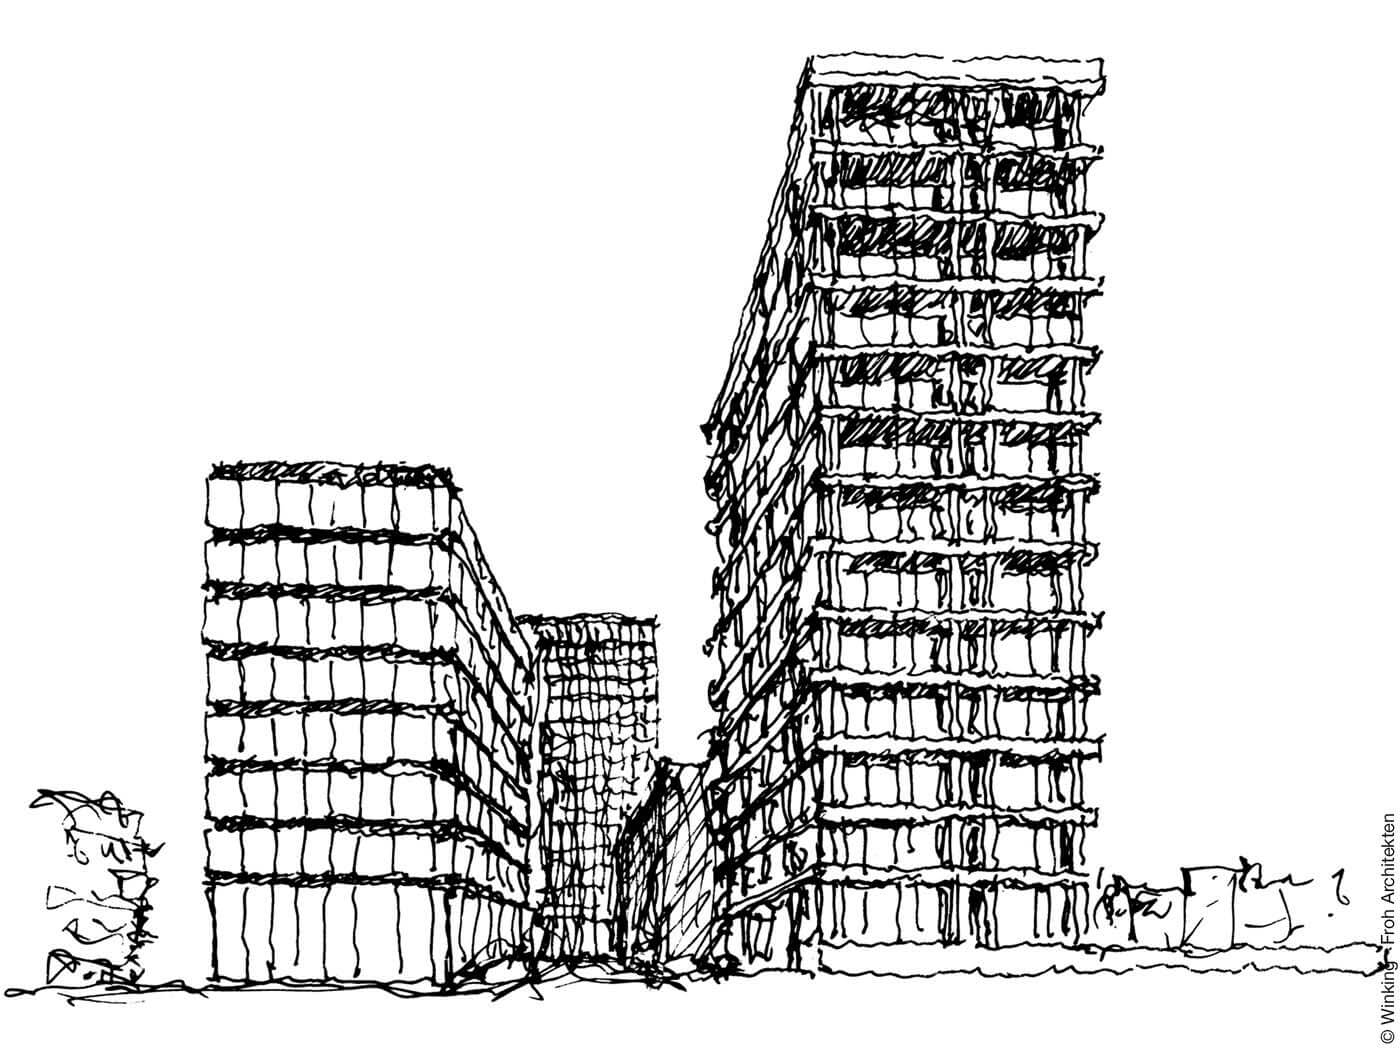 Zeichnung von Bernhard Winking: Wiking Froh Architekten GmbH, Revitalisierung Spiegel-Insel, Hamburg